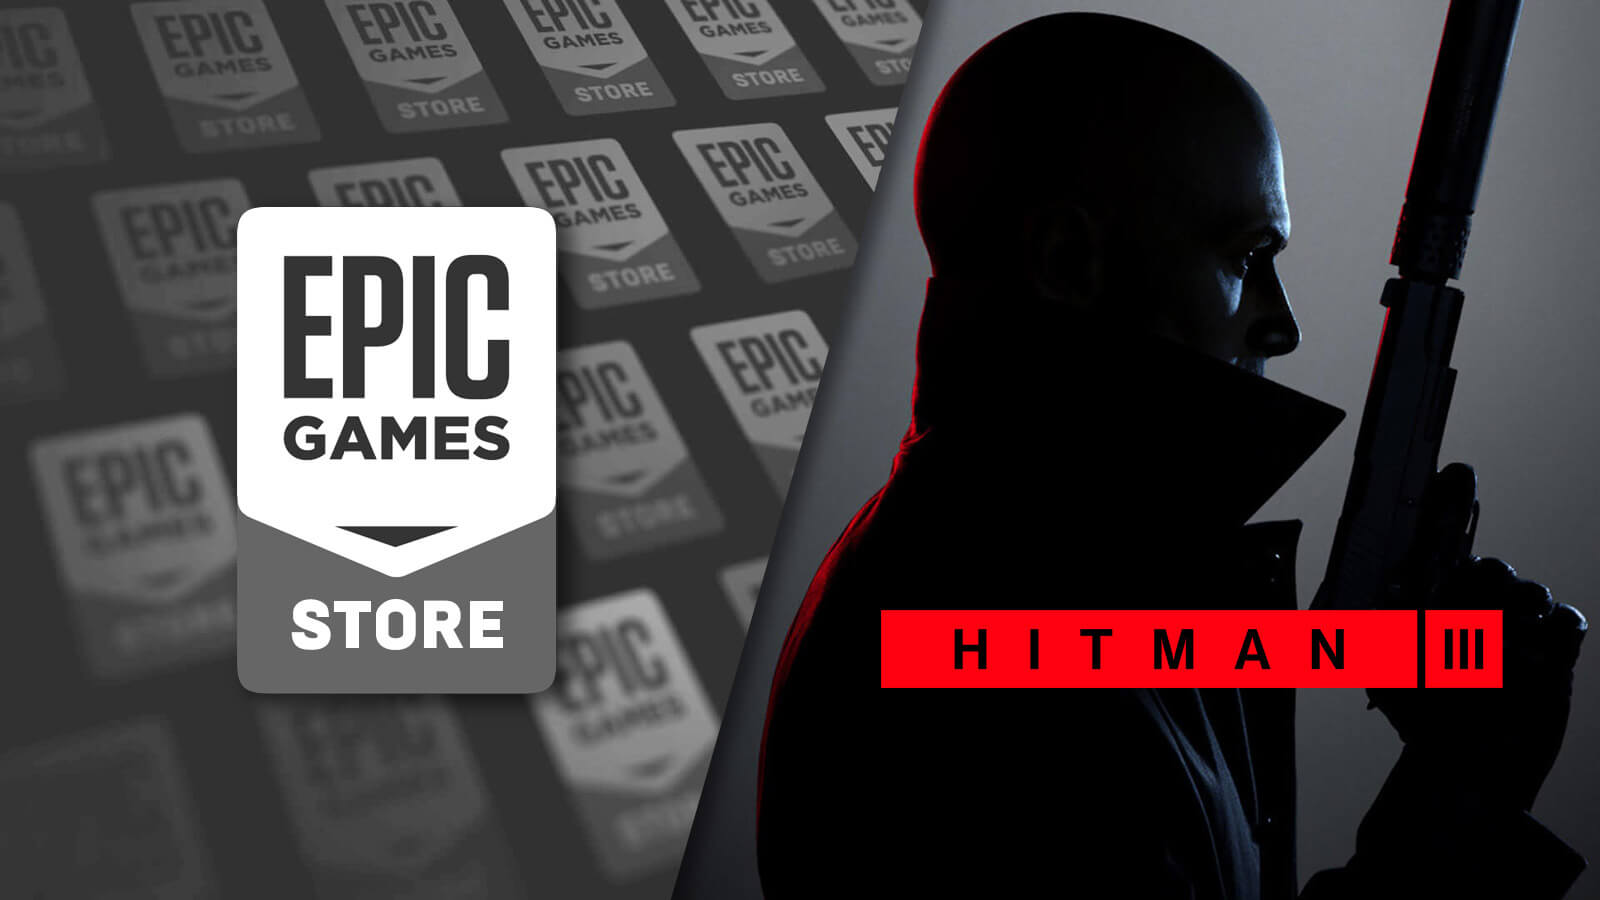 Hitman 3 Gameplay Trailer - Gameslaught